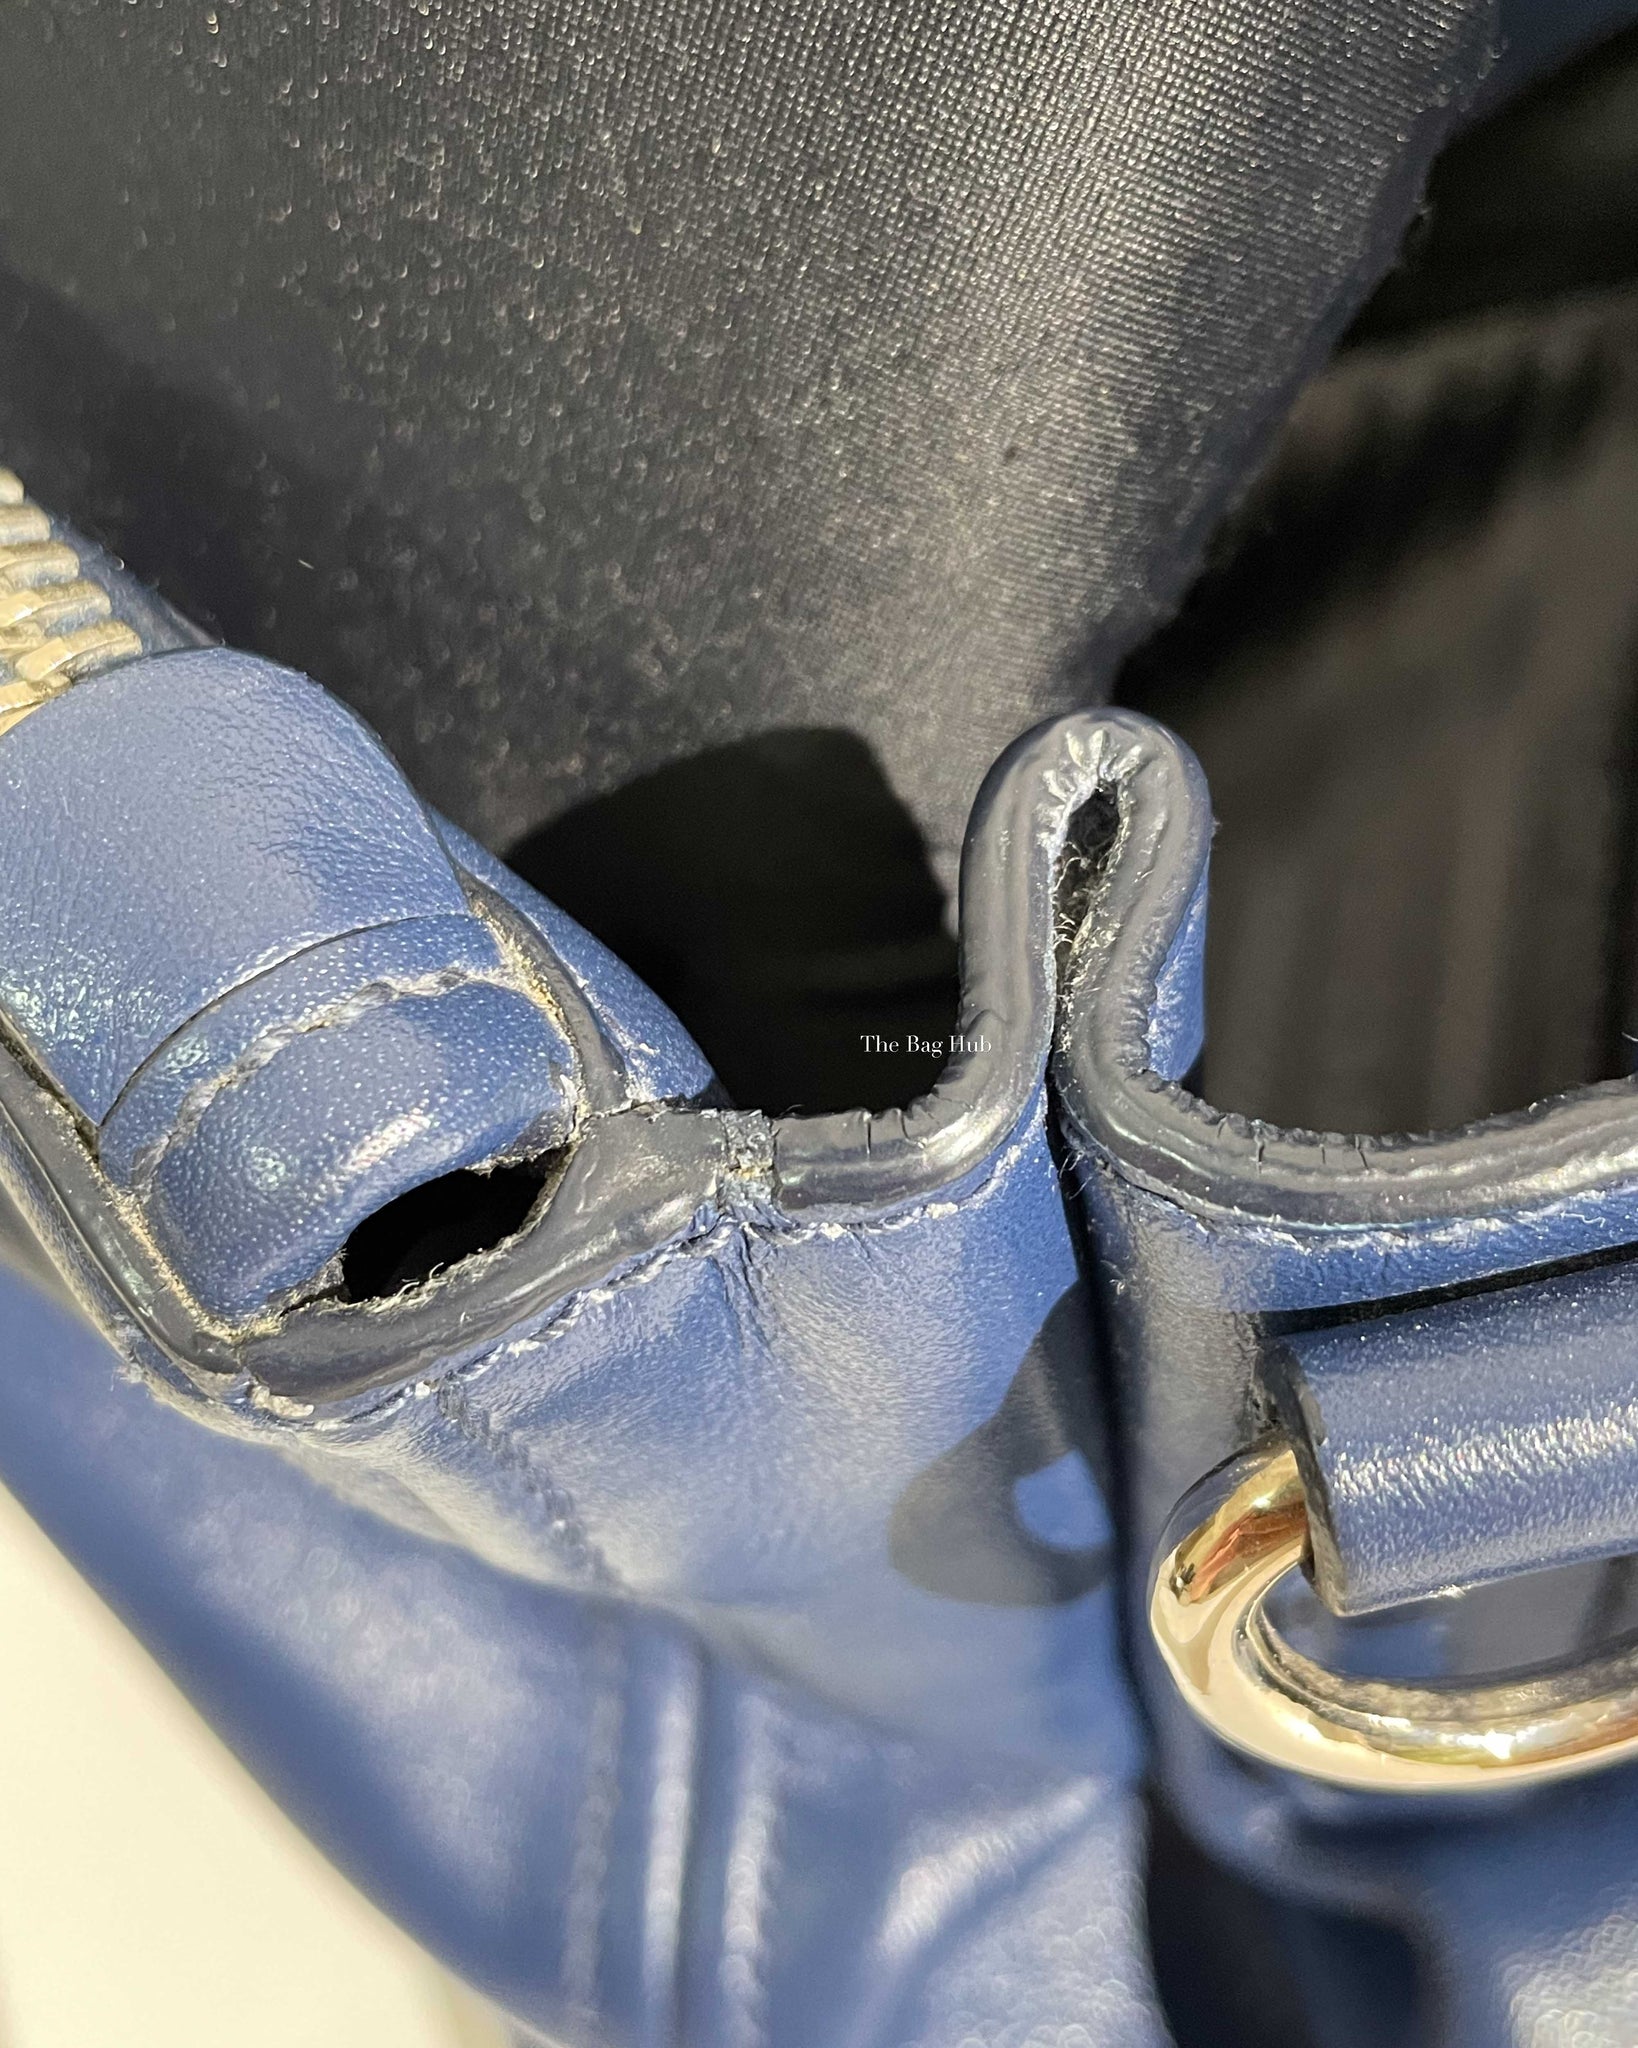 Prada Blue Soft Calf Double Zipped Tote Bag